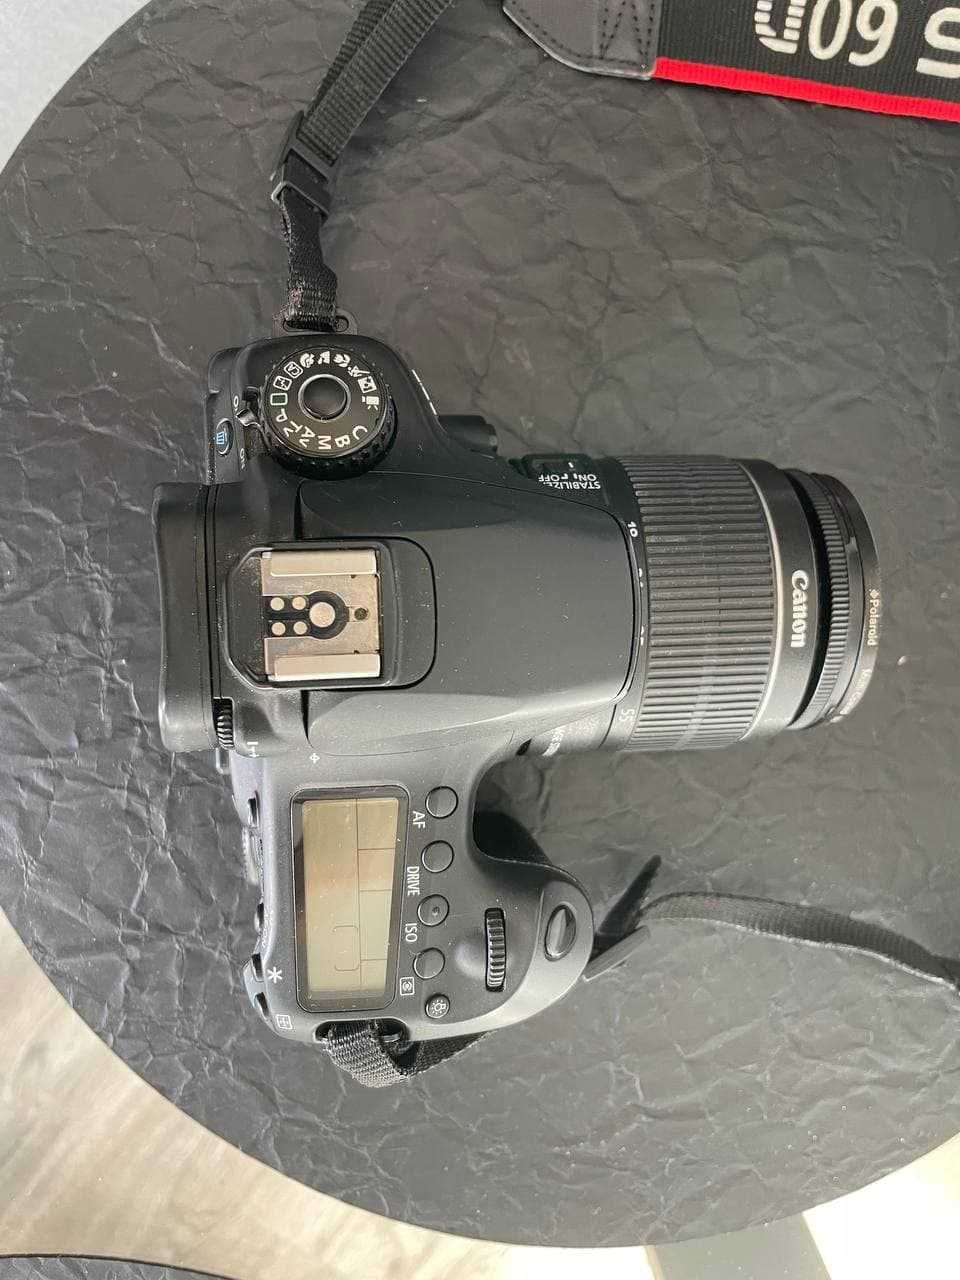 Canon EOS 60D como novo